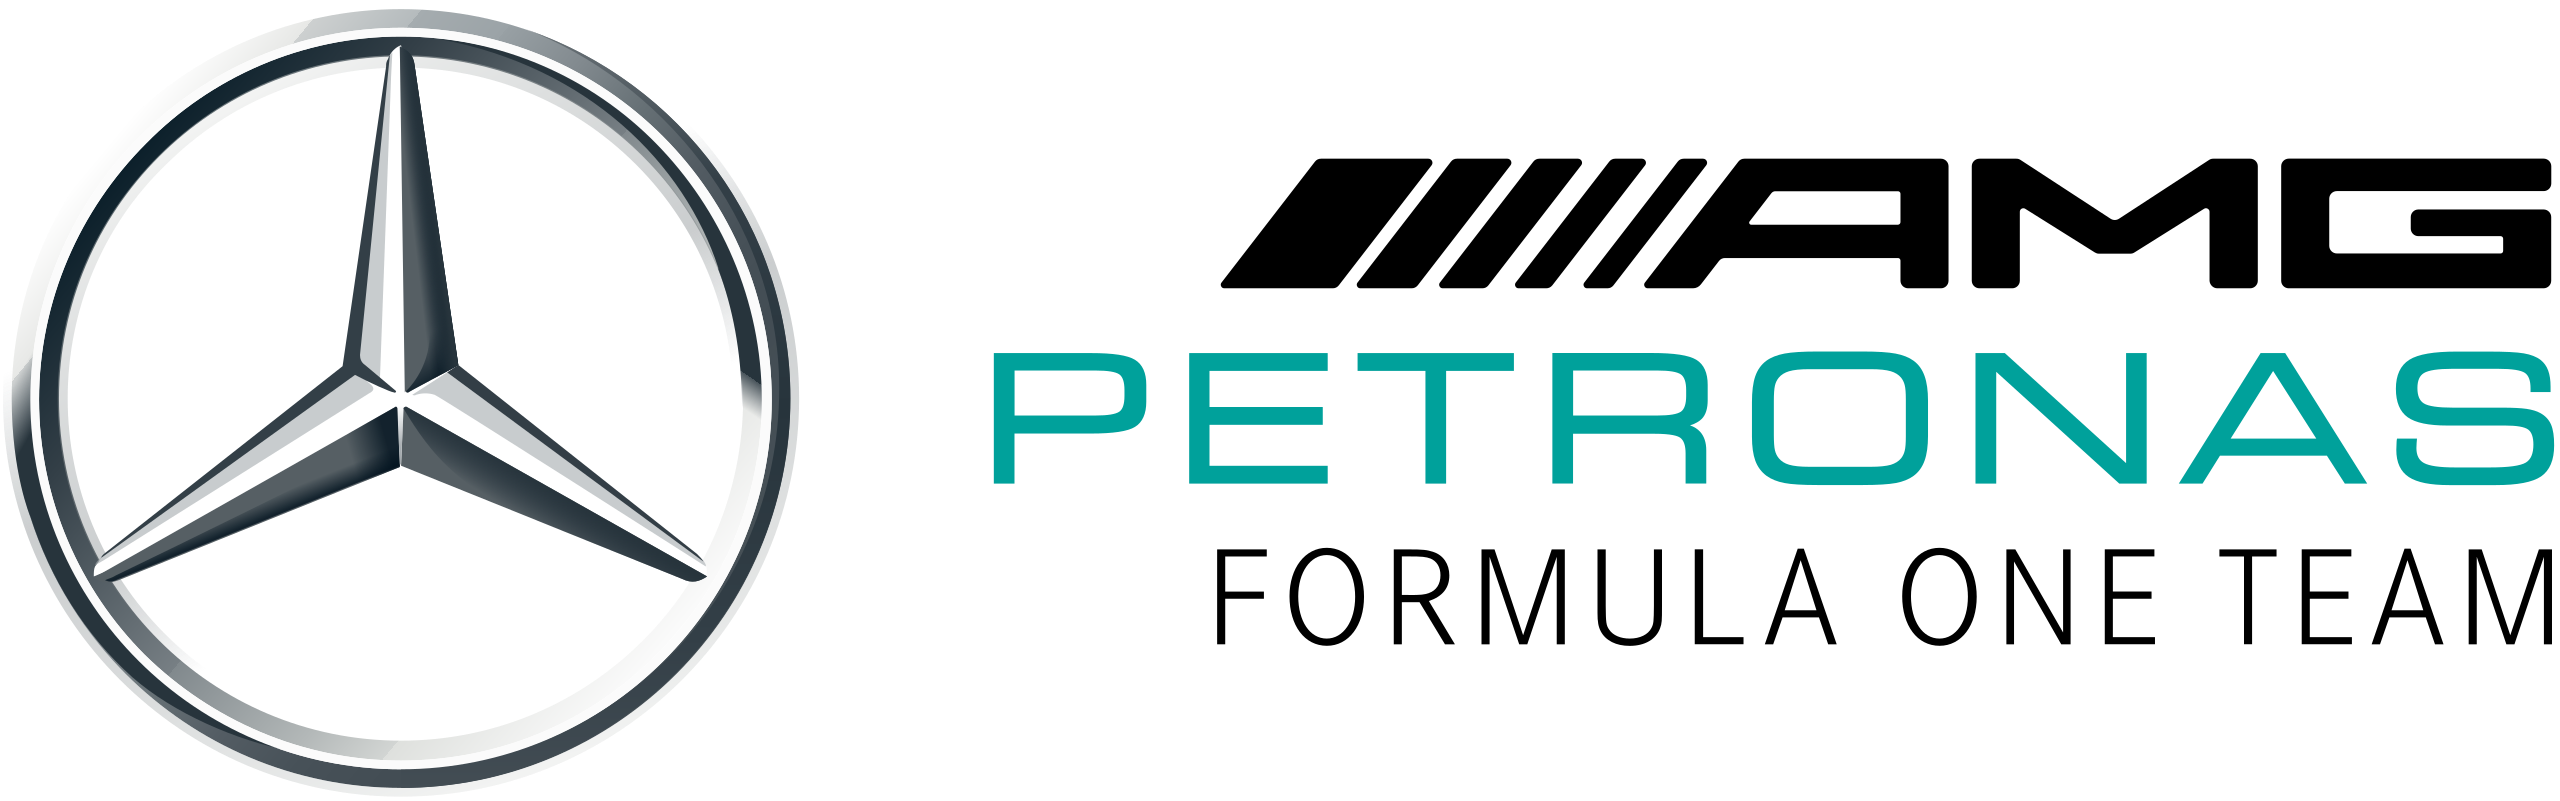 mercedes-benz Logo PNG Vector (AI) Free Download